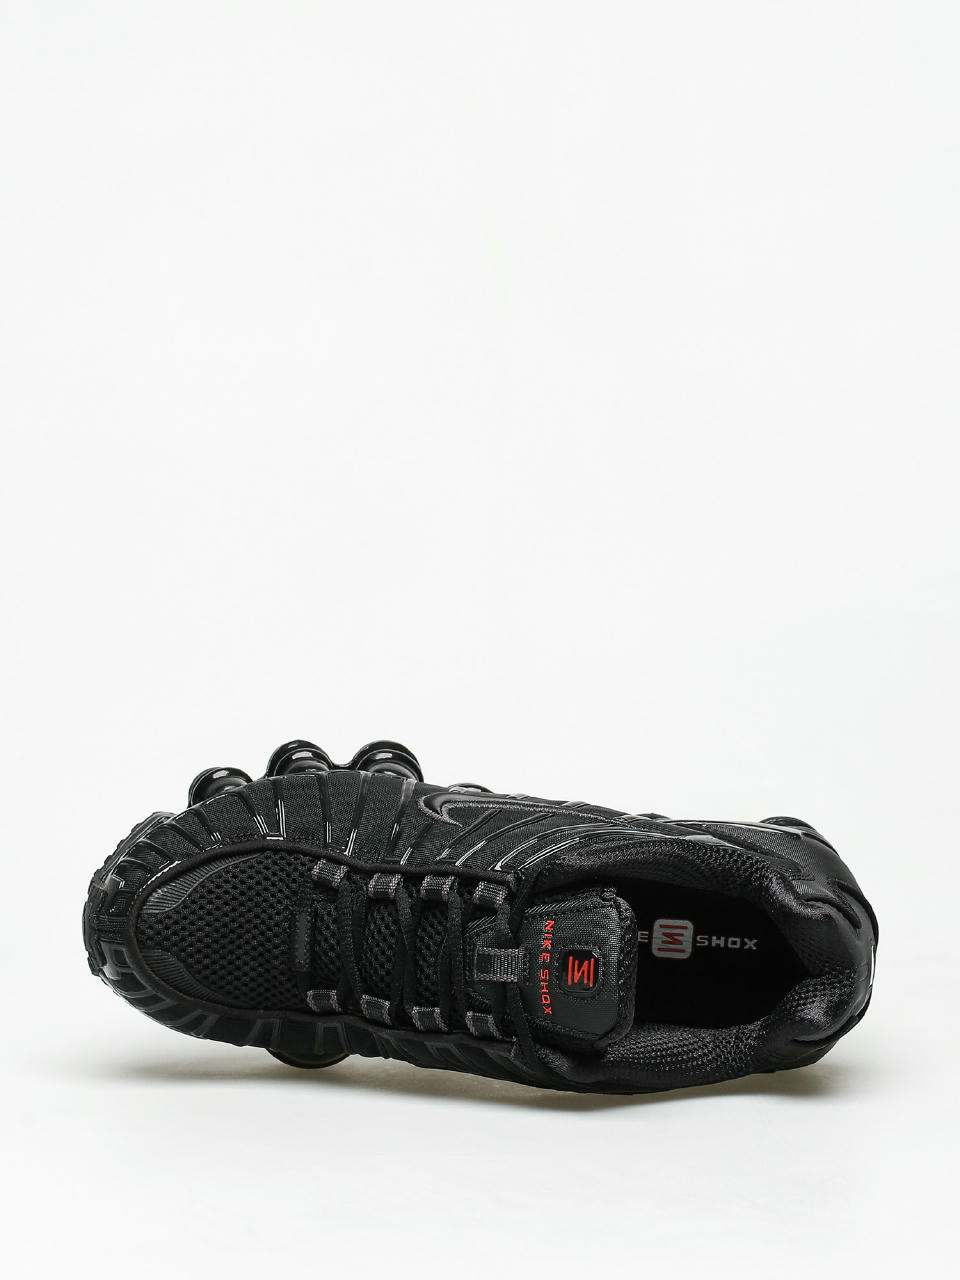 clar avea decojirea  Pantofi Nike Shox Tl Wmn (black/black metallic hematite)